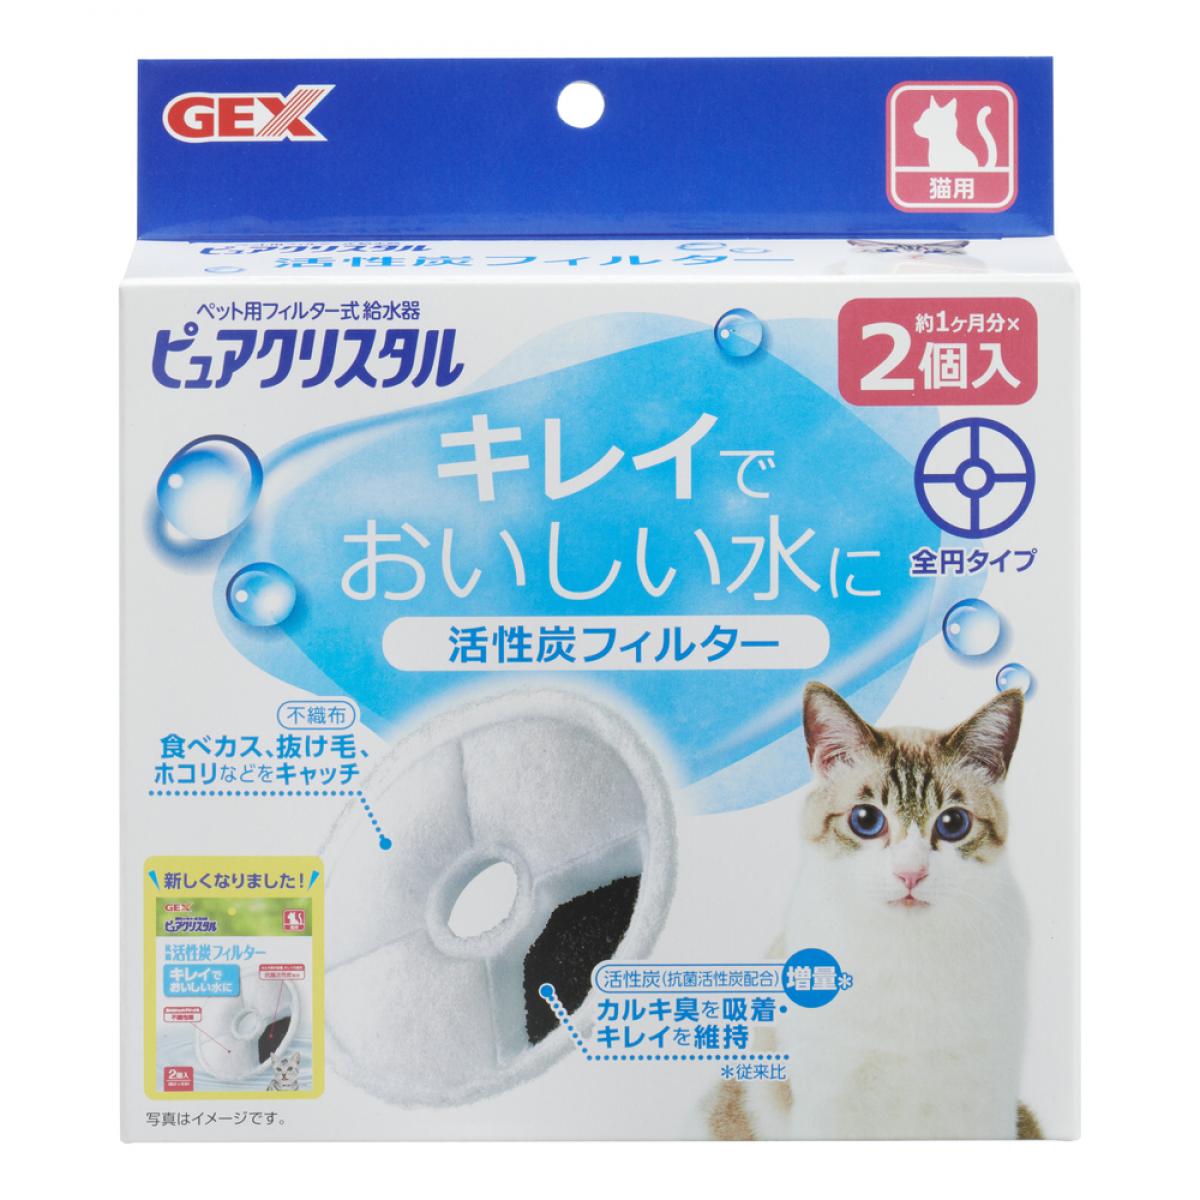 GEX ピュアクリスタル 活性炭フィルター 全円 猫用 2個入 給水器 交換用フィルター ねこ ネコ